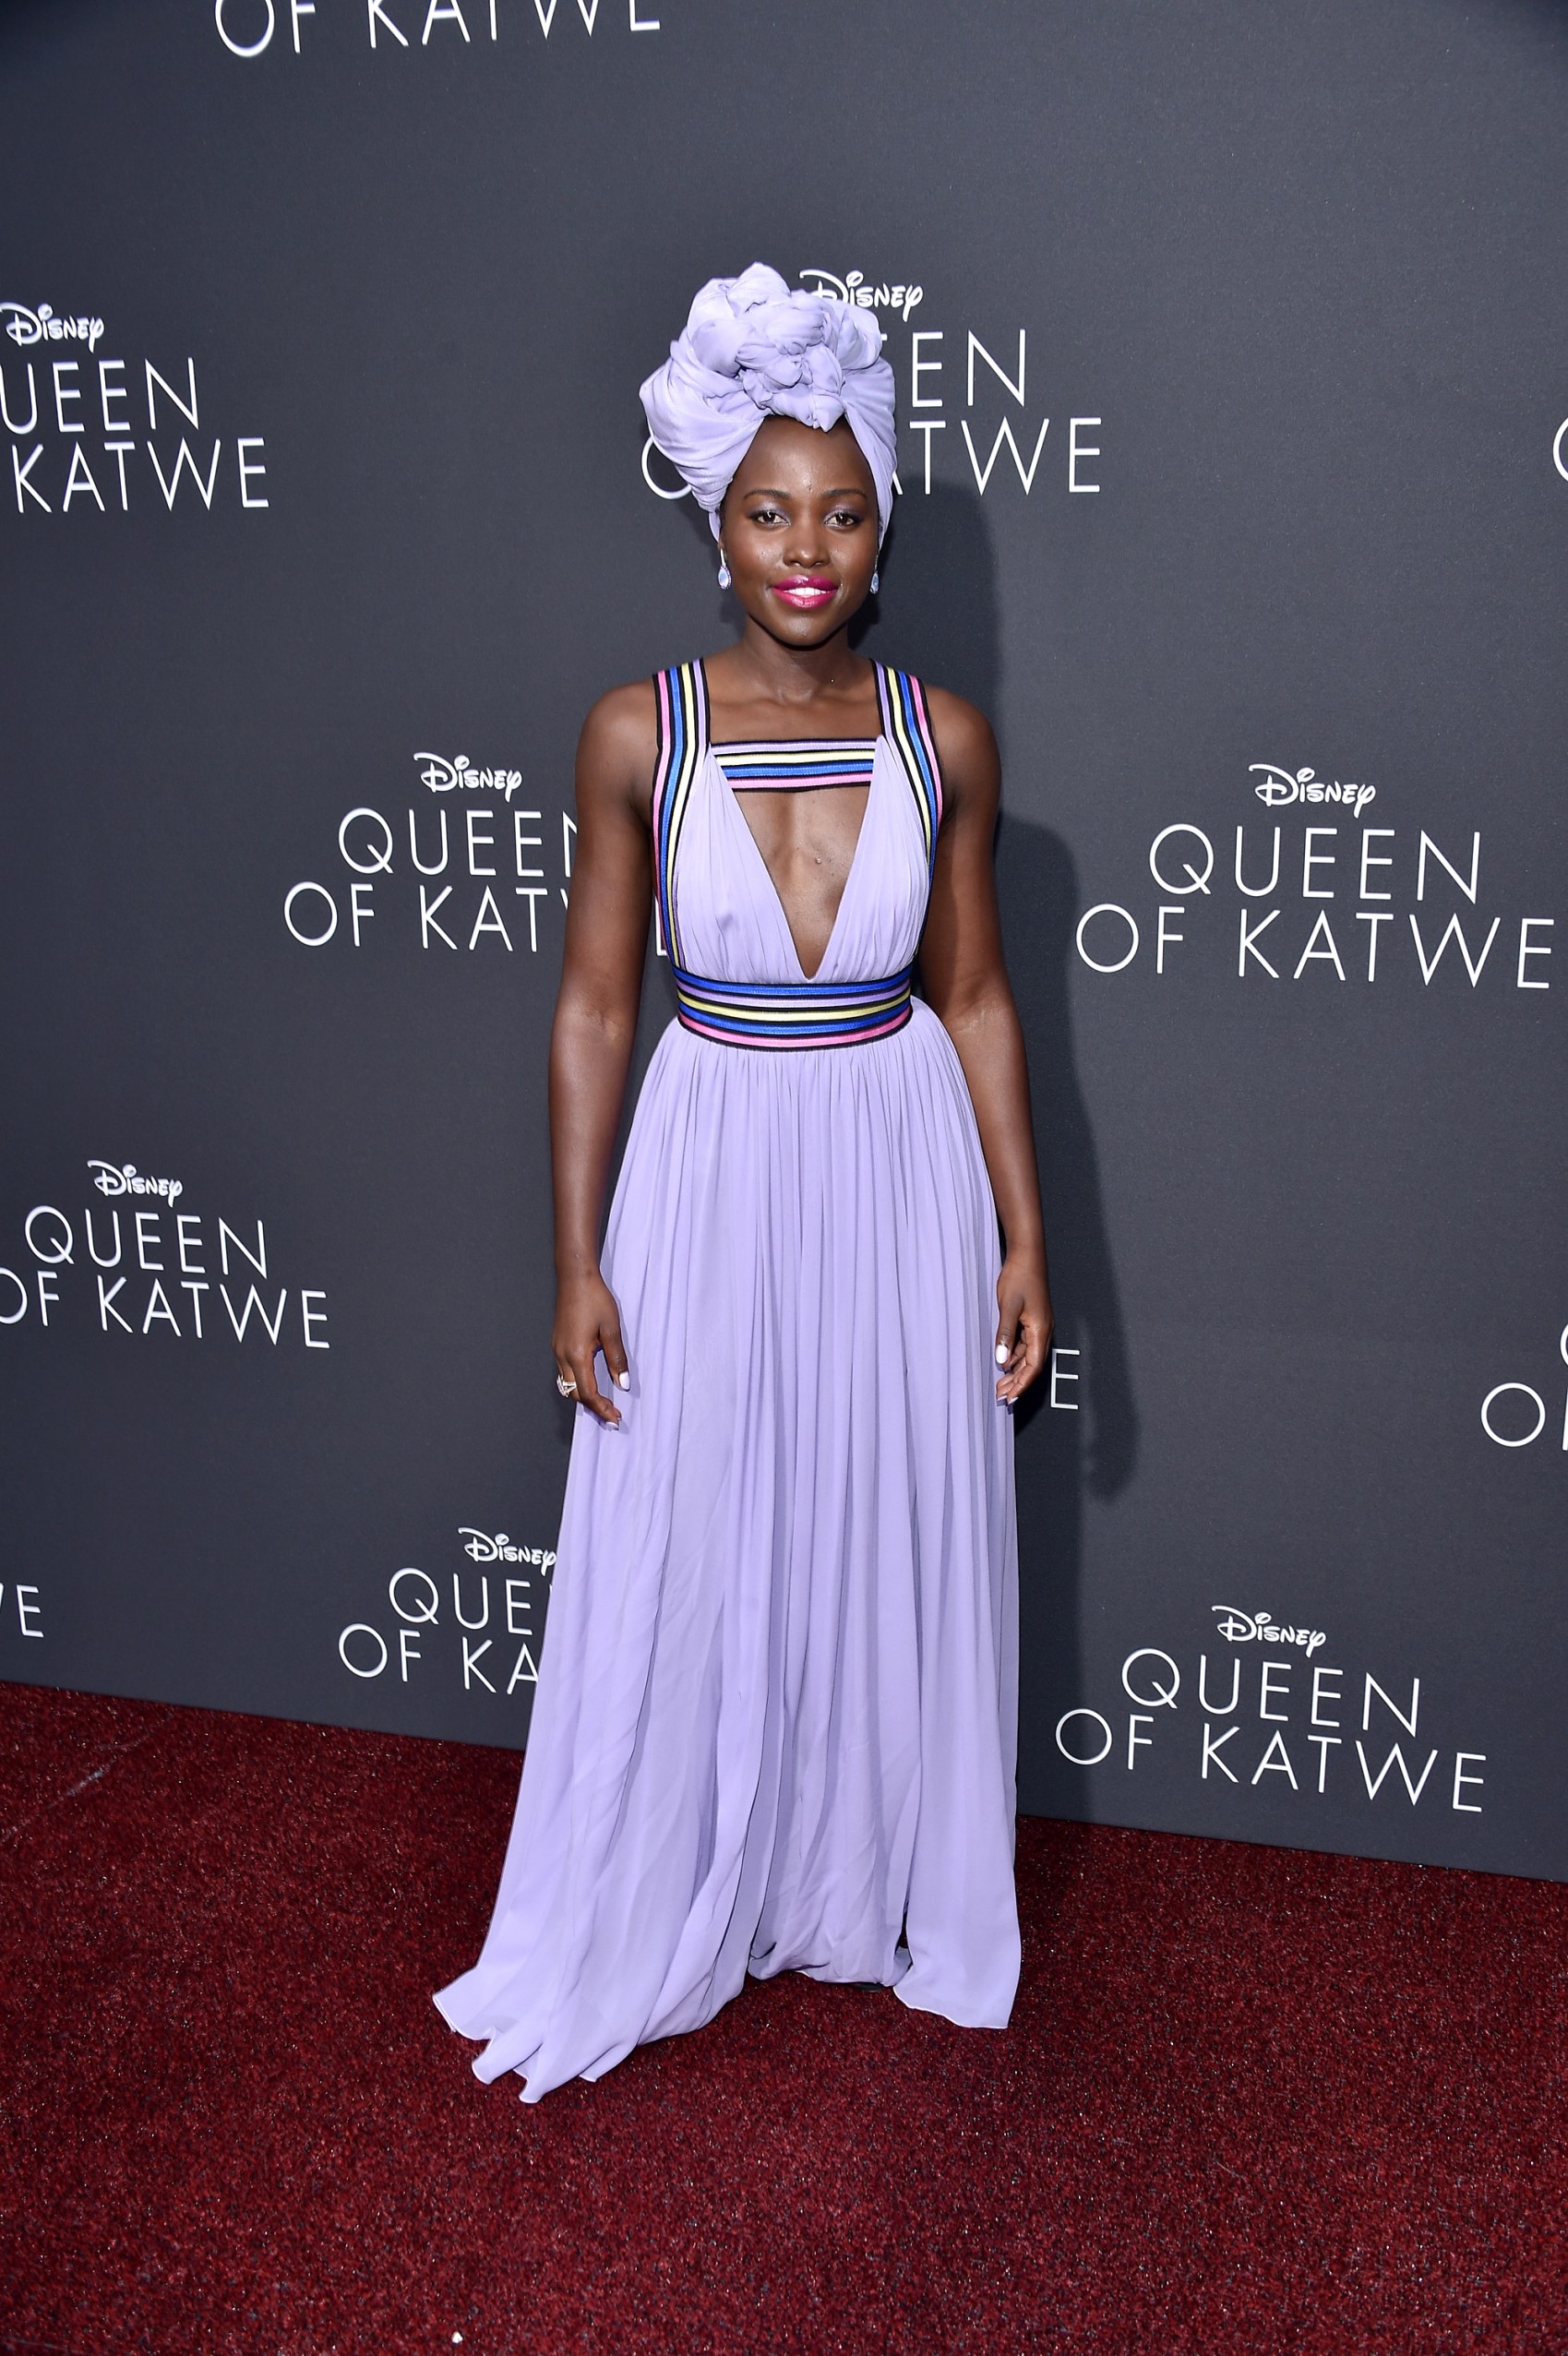 Premiere Of Disney's "Queen Of Katwe" - Arrivals